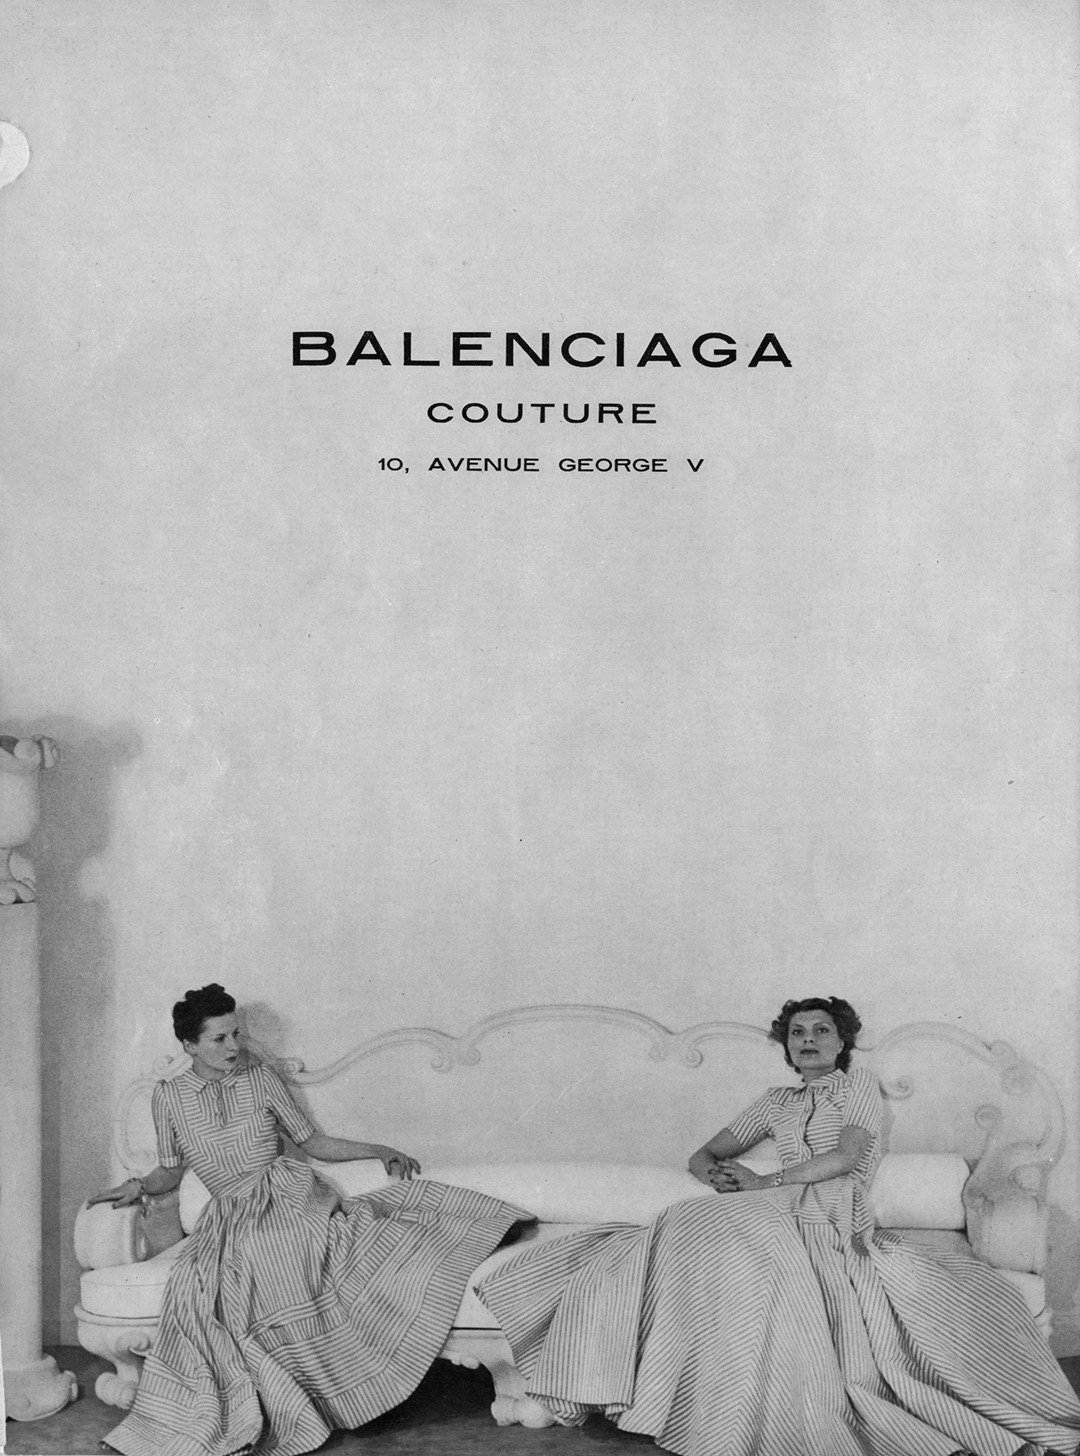 grado Poner A menudo hablado Elvira González Twitter પર: "Cristóbal Balenciaga Eizaguirre (Guetaria,  1895 - Jávea, 1972) tenía un modo único y personal de entender el trabajo  de modisto, y influencia sigue vigente en la moda internacional